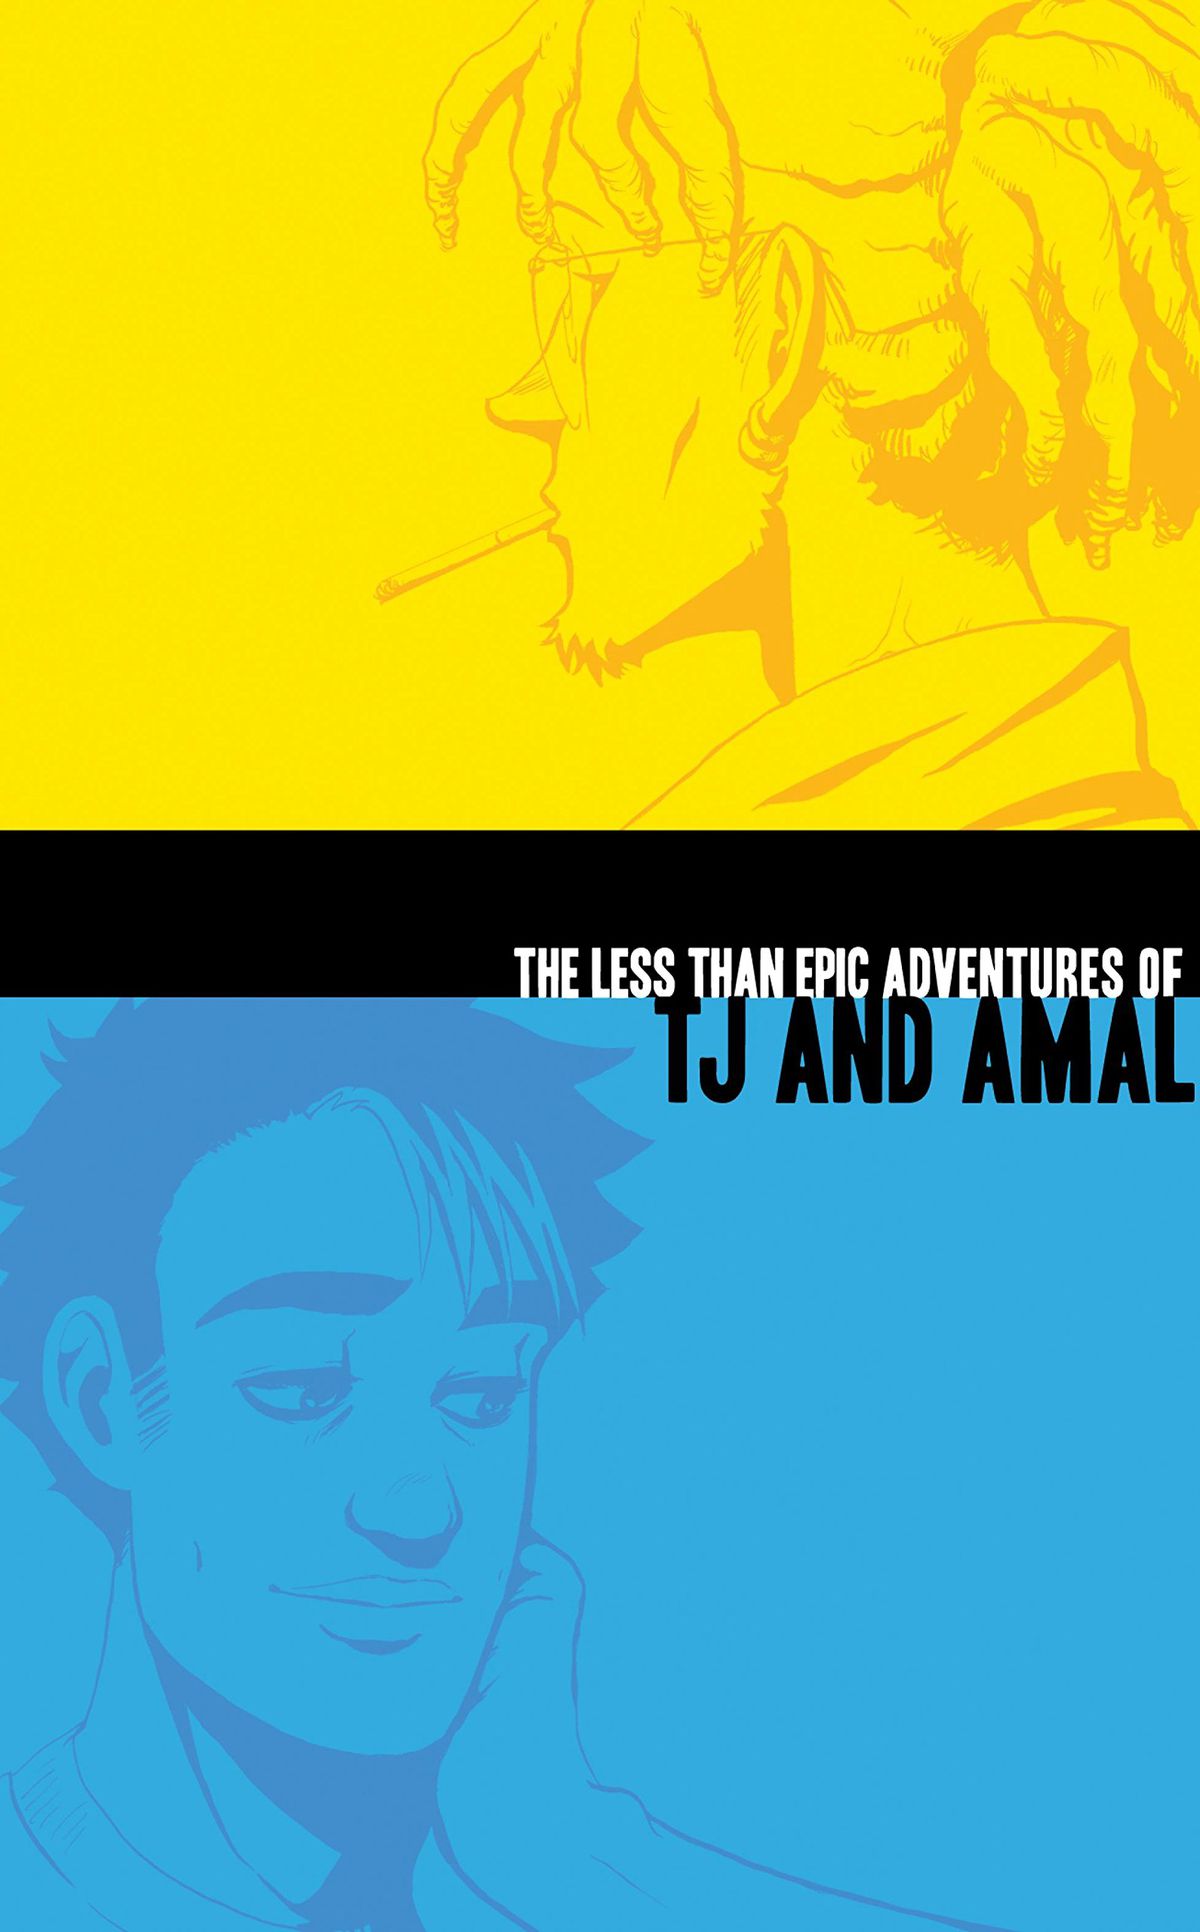 La copertina di The Less Than Epic Adventures of TJ and Amal, divisa a metà con una parte superiore giallo limone e una parte inferiore blu brillante, con disegni al tratto di due giovani uomini rivolti in direzioni opposte, uno nel campo in alto, uno nel parte inferiore